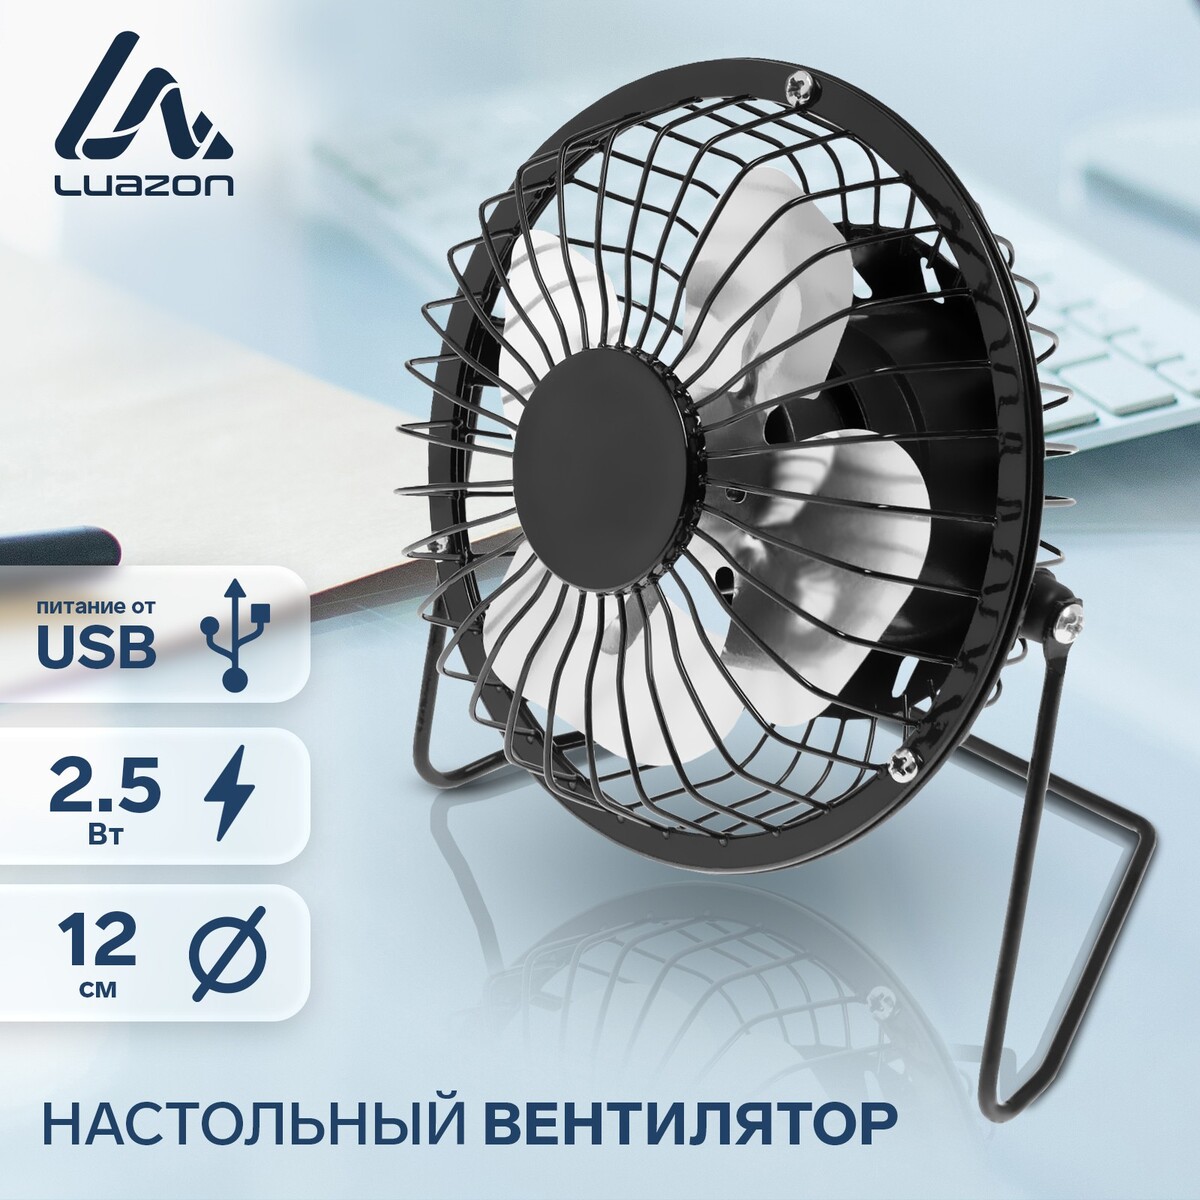 Вентилятор luazon lof-05, настольный, 2.5 вт, 12 см, металл, черный вентилятор для корпуса deepcool tf120s